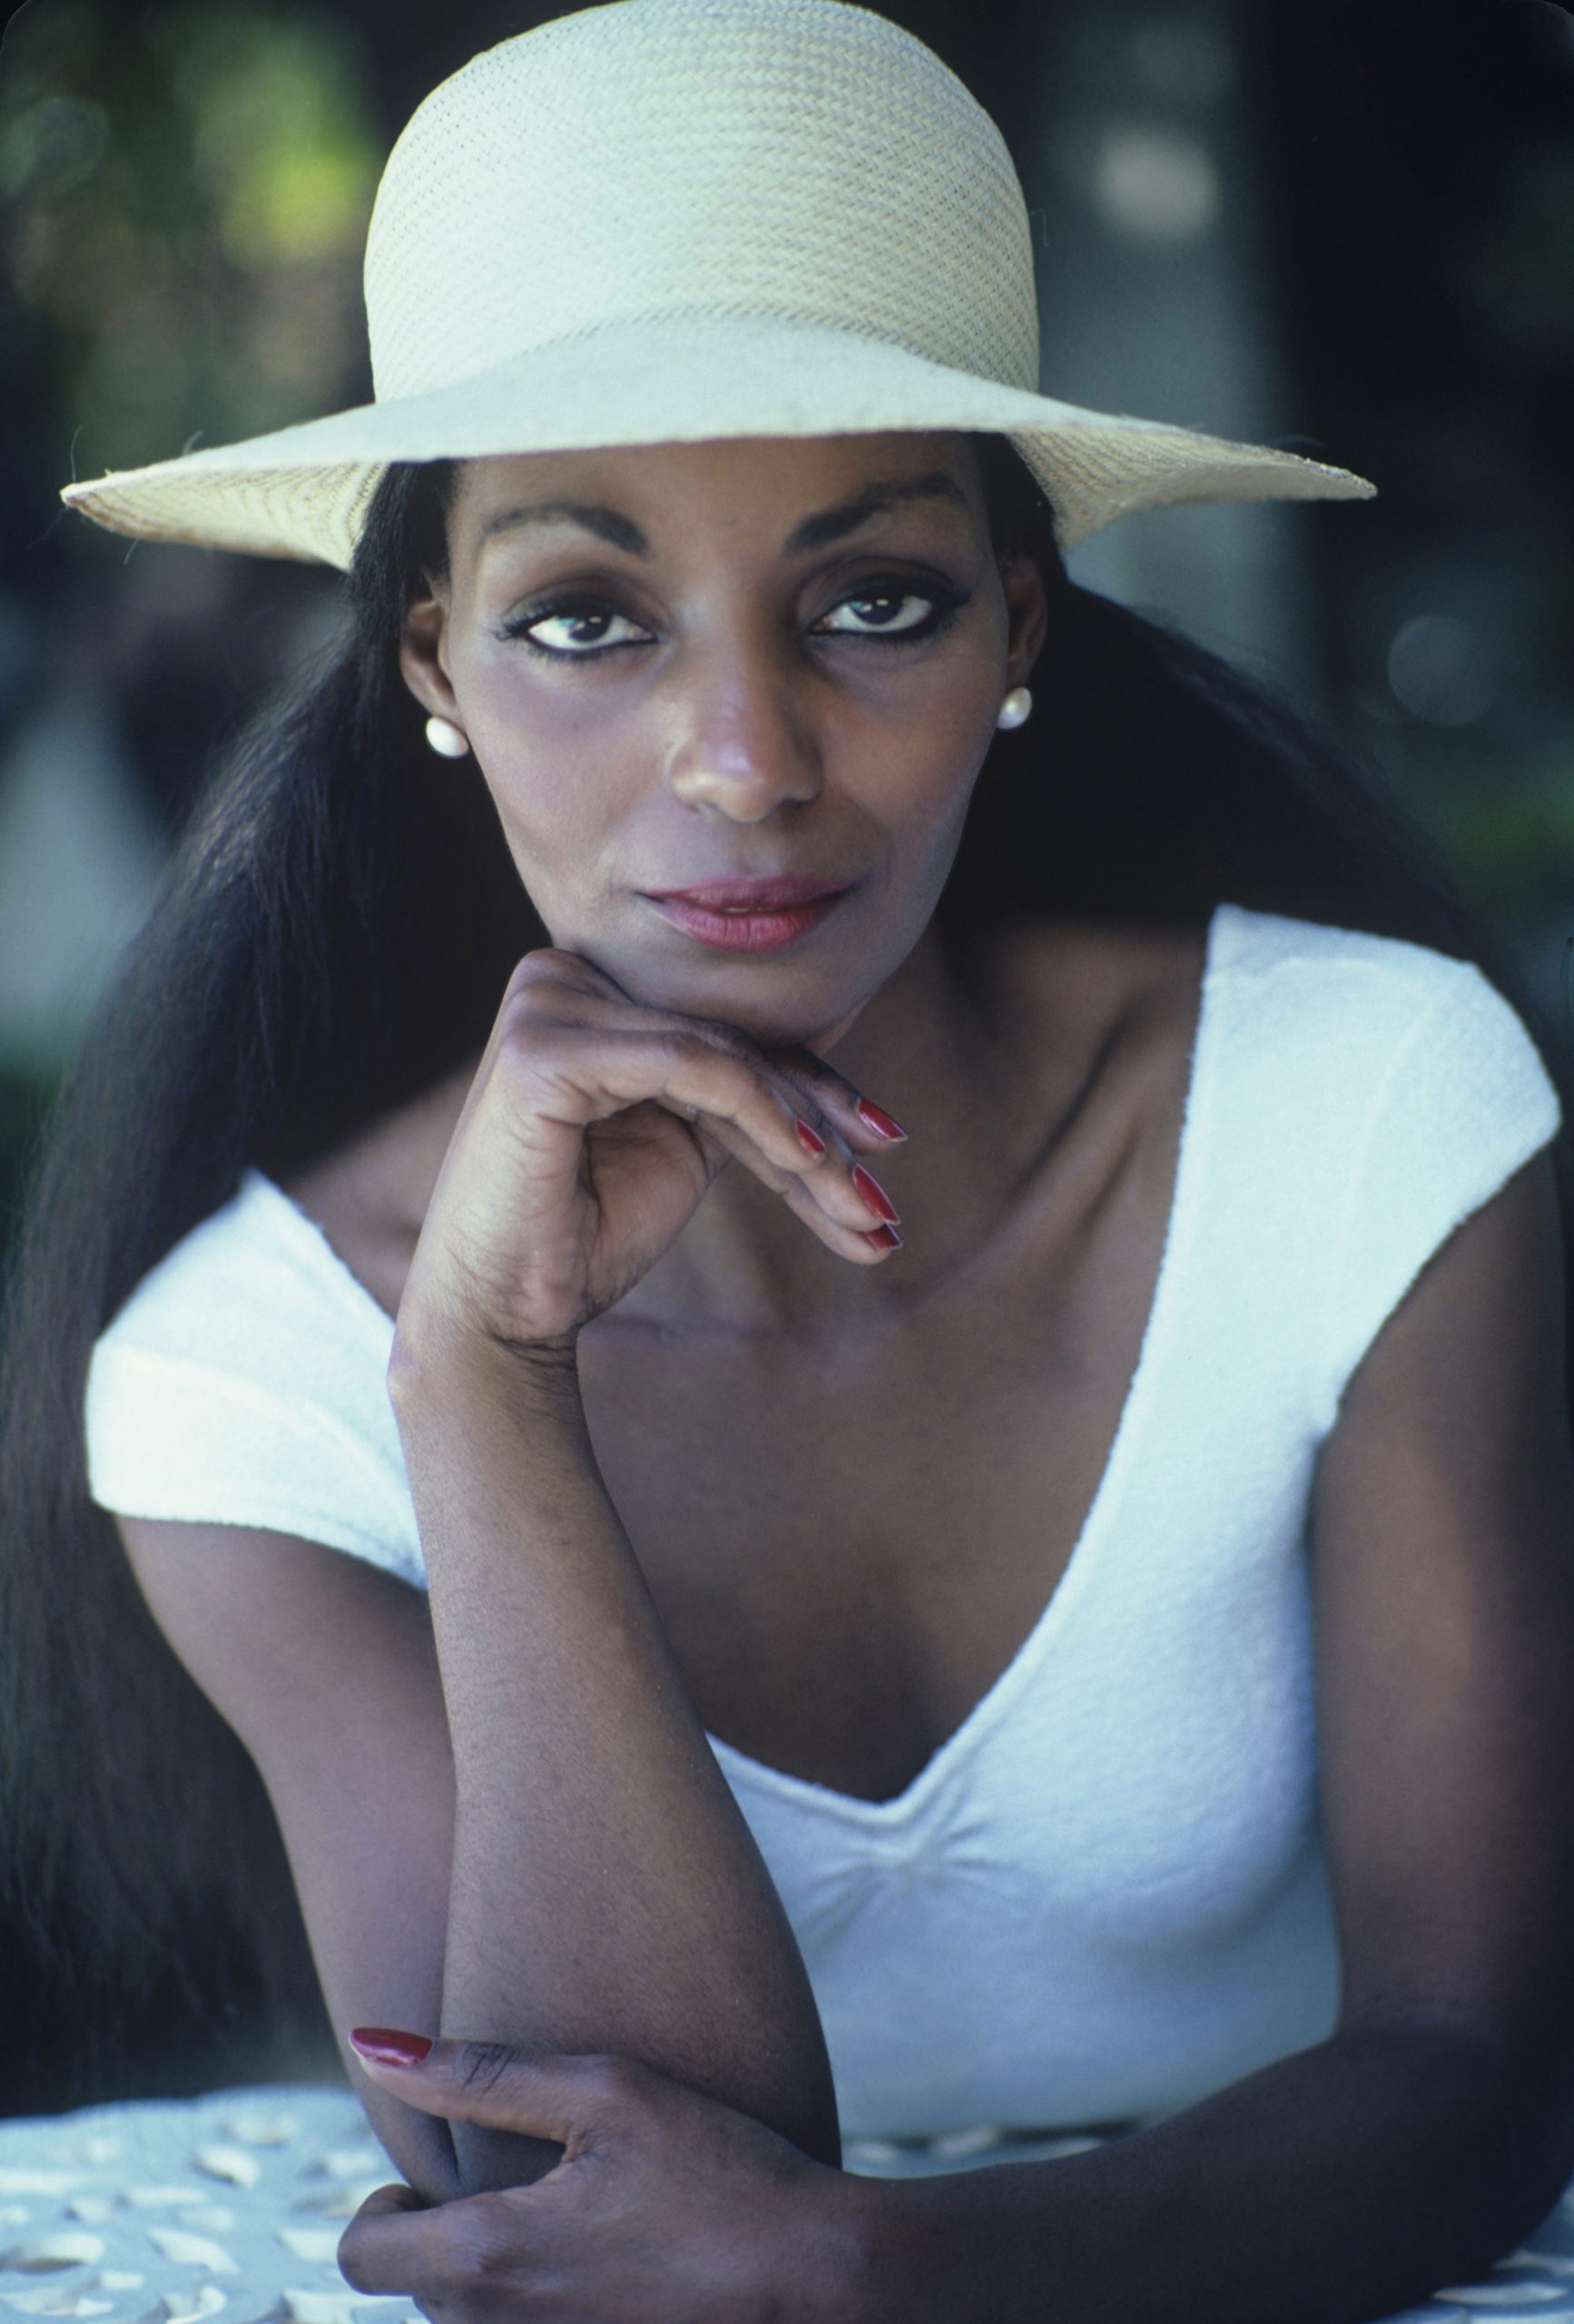 Lahaina Kameha wearing a hat, in Haiti, February 1981